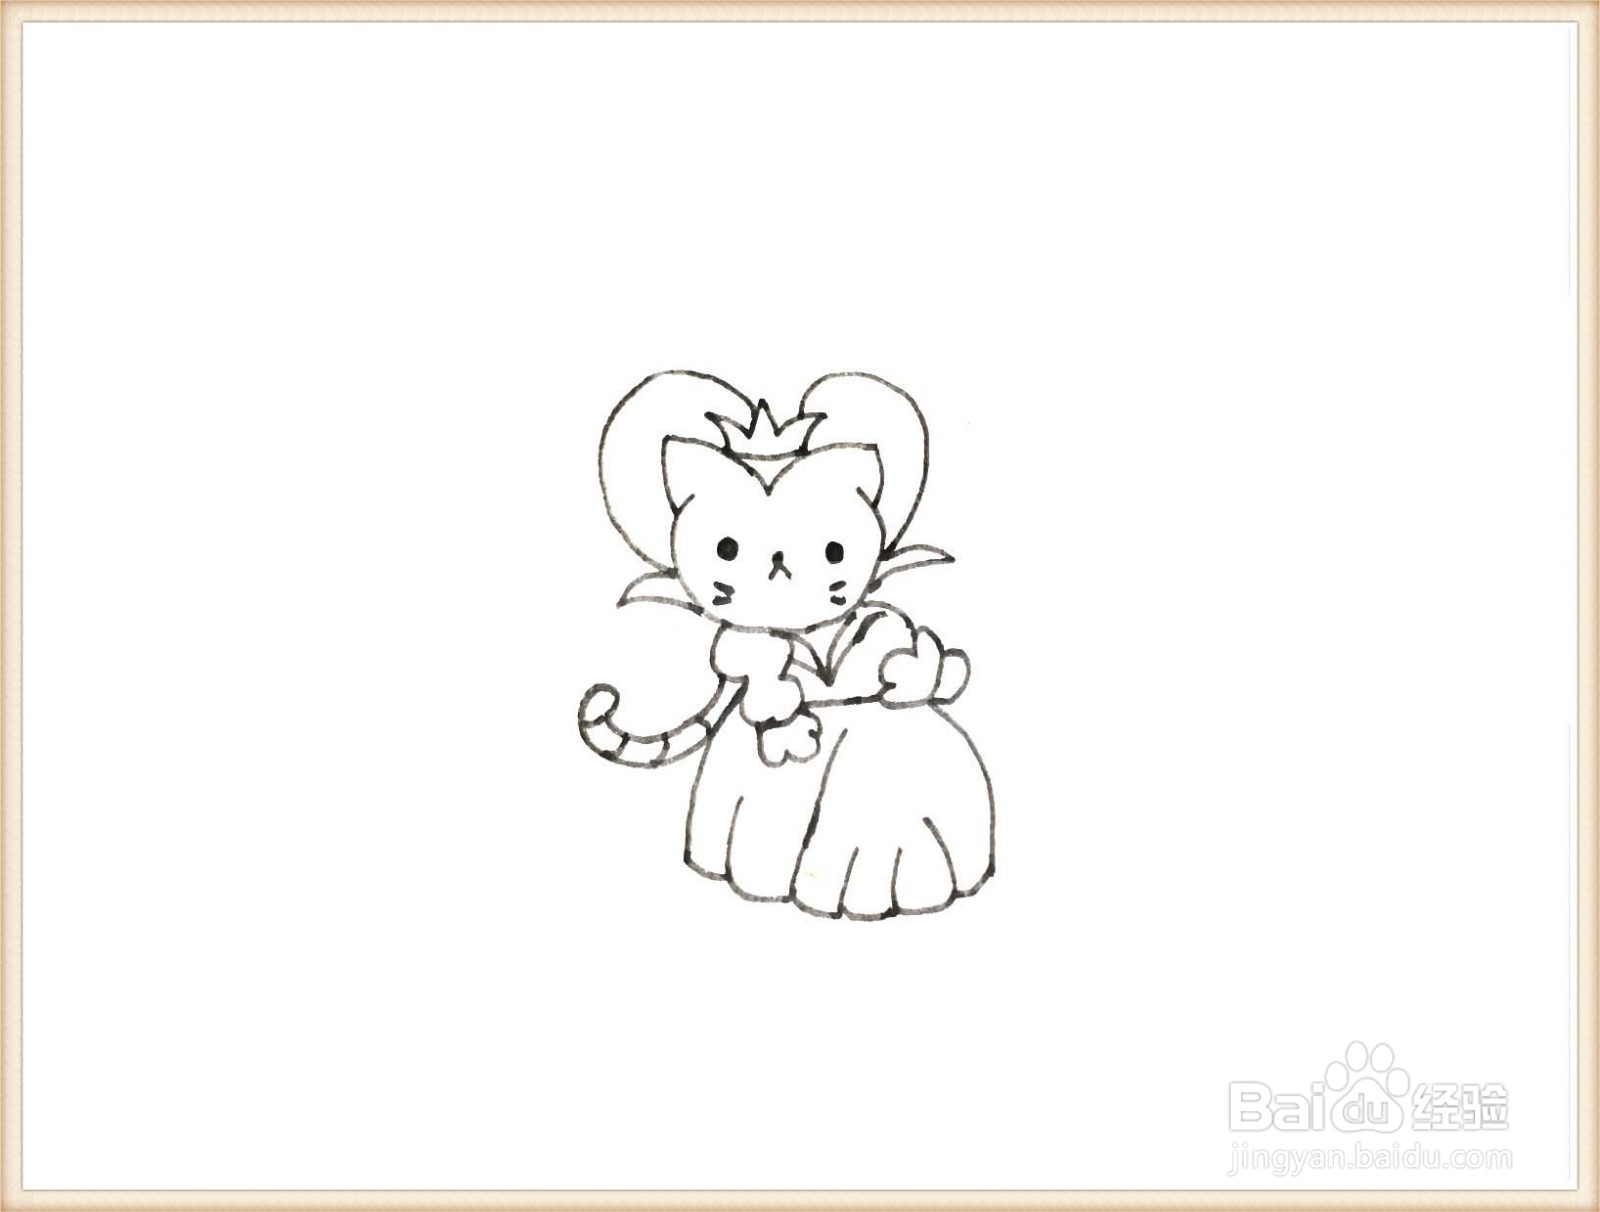 一笔一笔教你画动漫猫公主简笔画